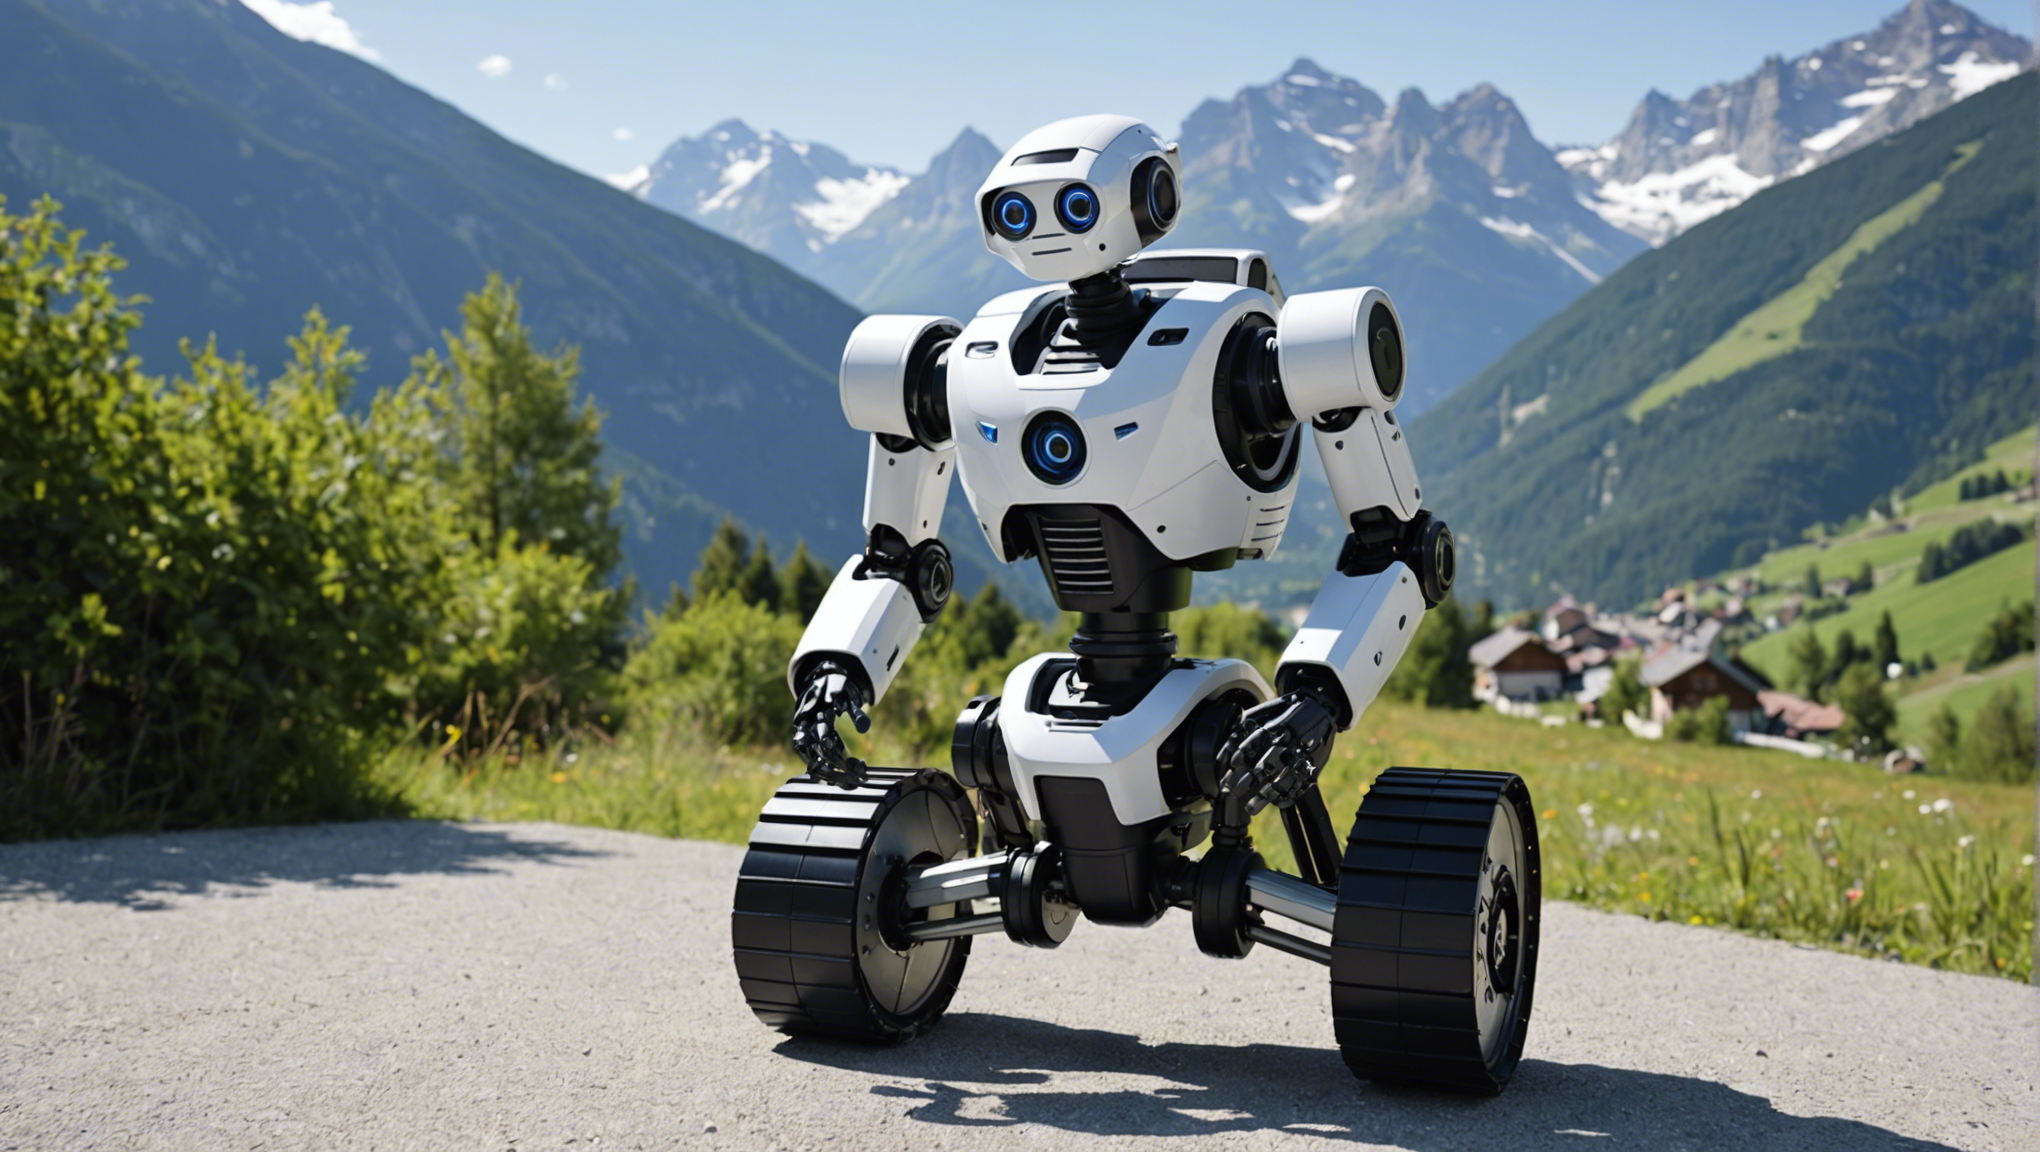 louez-vous un robot hautes-alpes : la solution innovante pour la location de robots dans la région. profitez d'une location de robot facile et pratique pour vos besoins professionnels ou personnels.